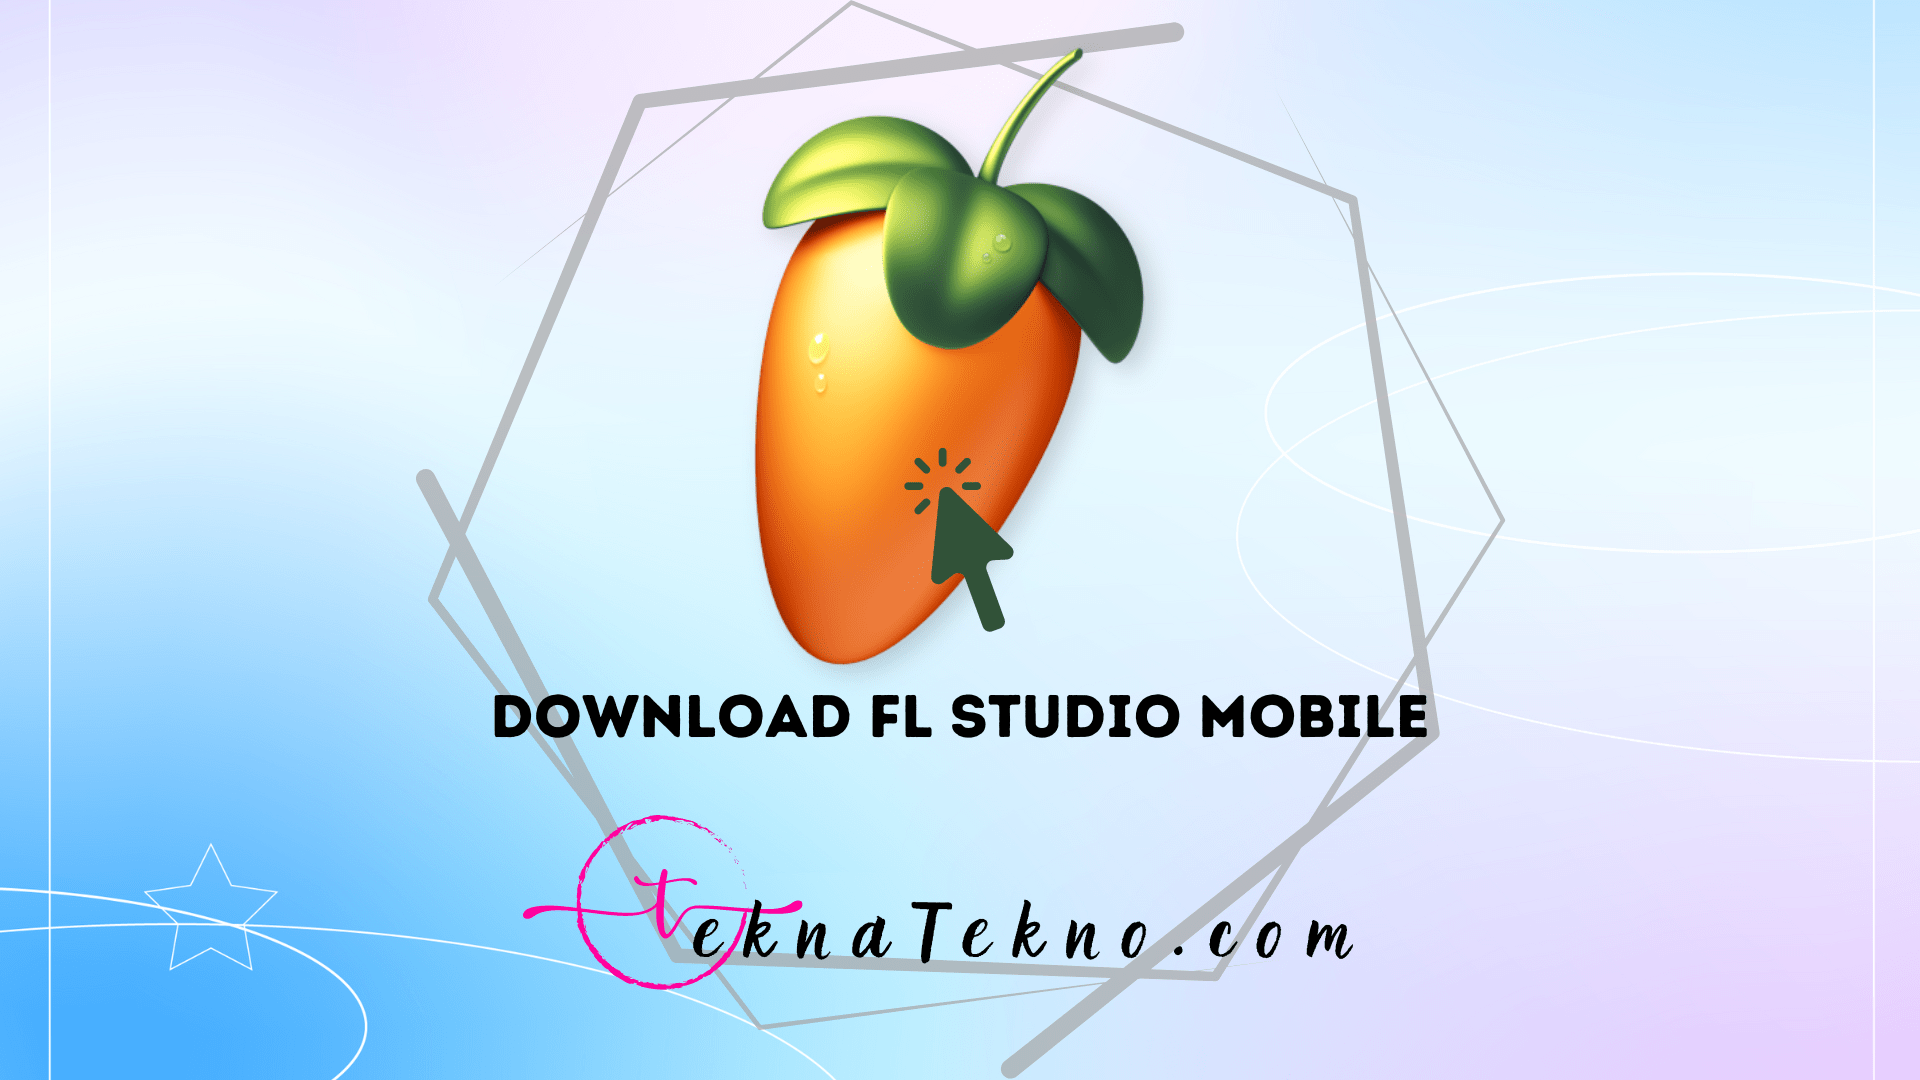 Download FL Studio Mobile untuk PC dan Android dari Play Store